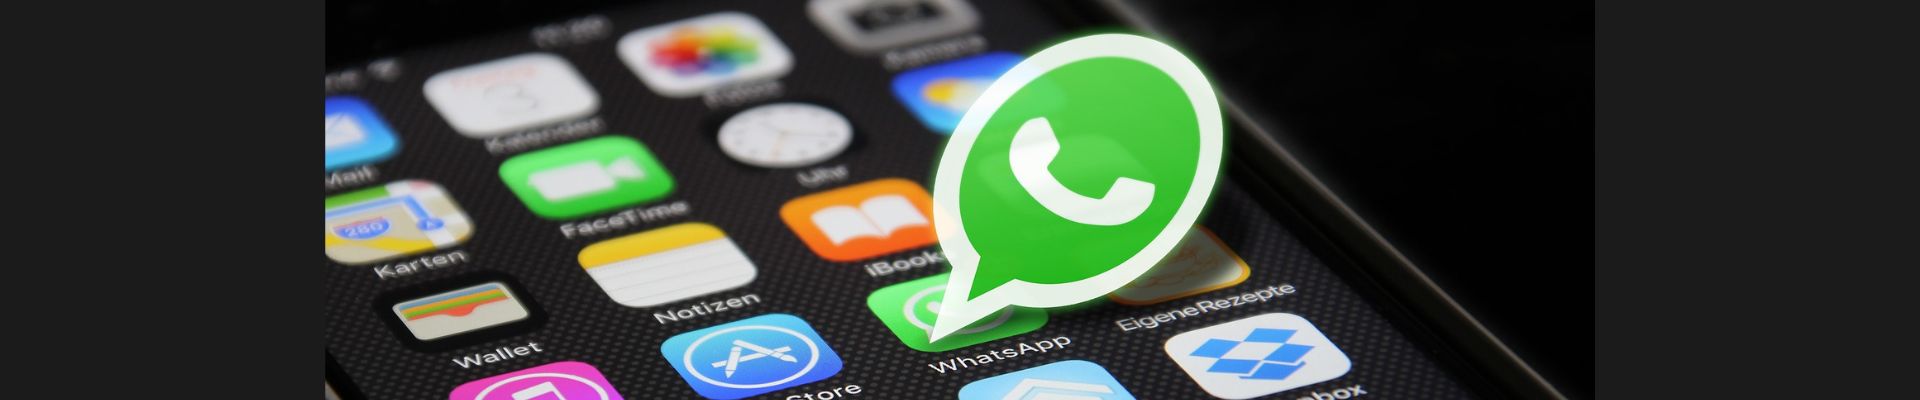 WhatsApp lança novo recurso de grupo de discussão no Brasil